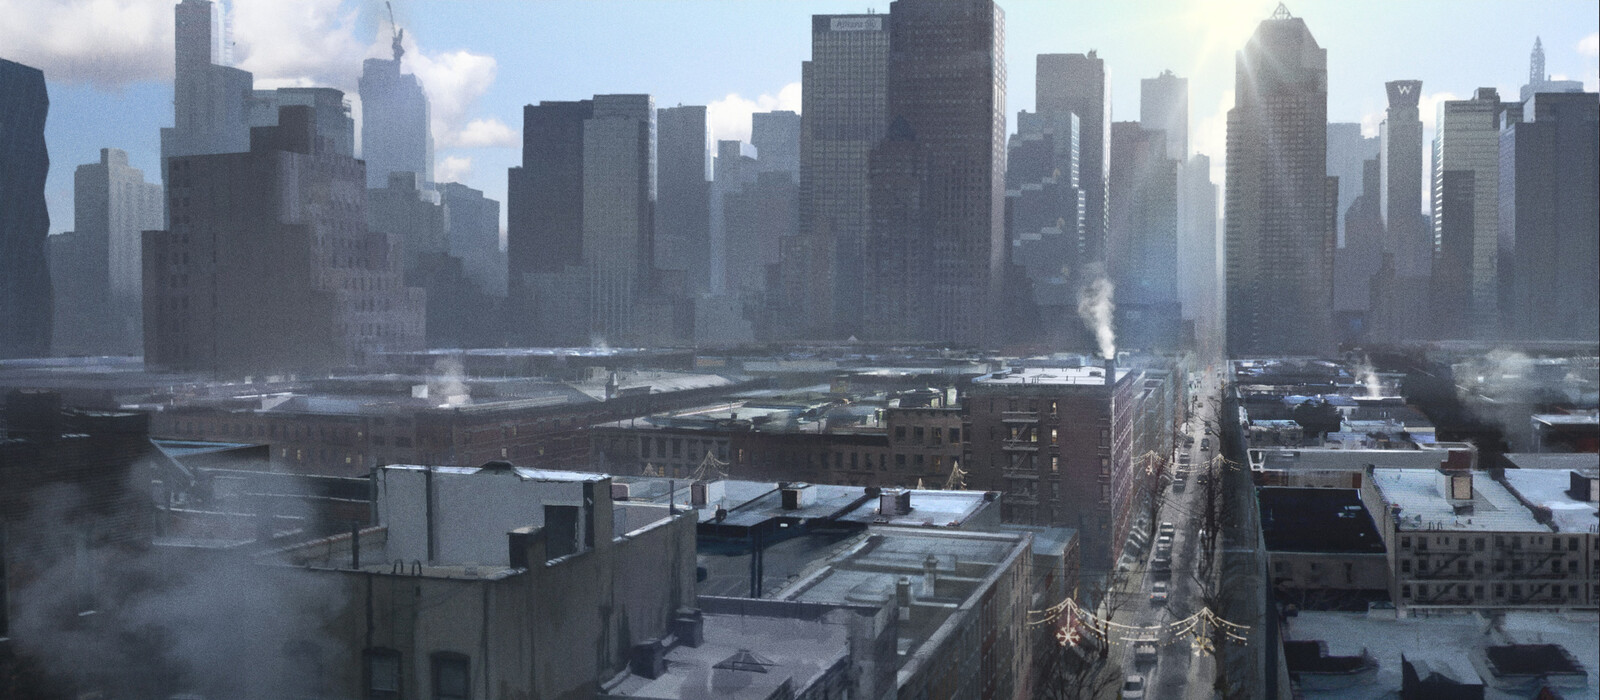 The Division 'Take Back New York' Trailer Key-frames